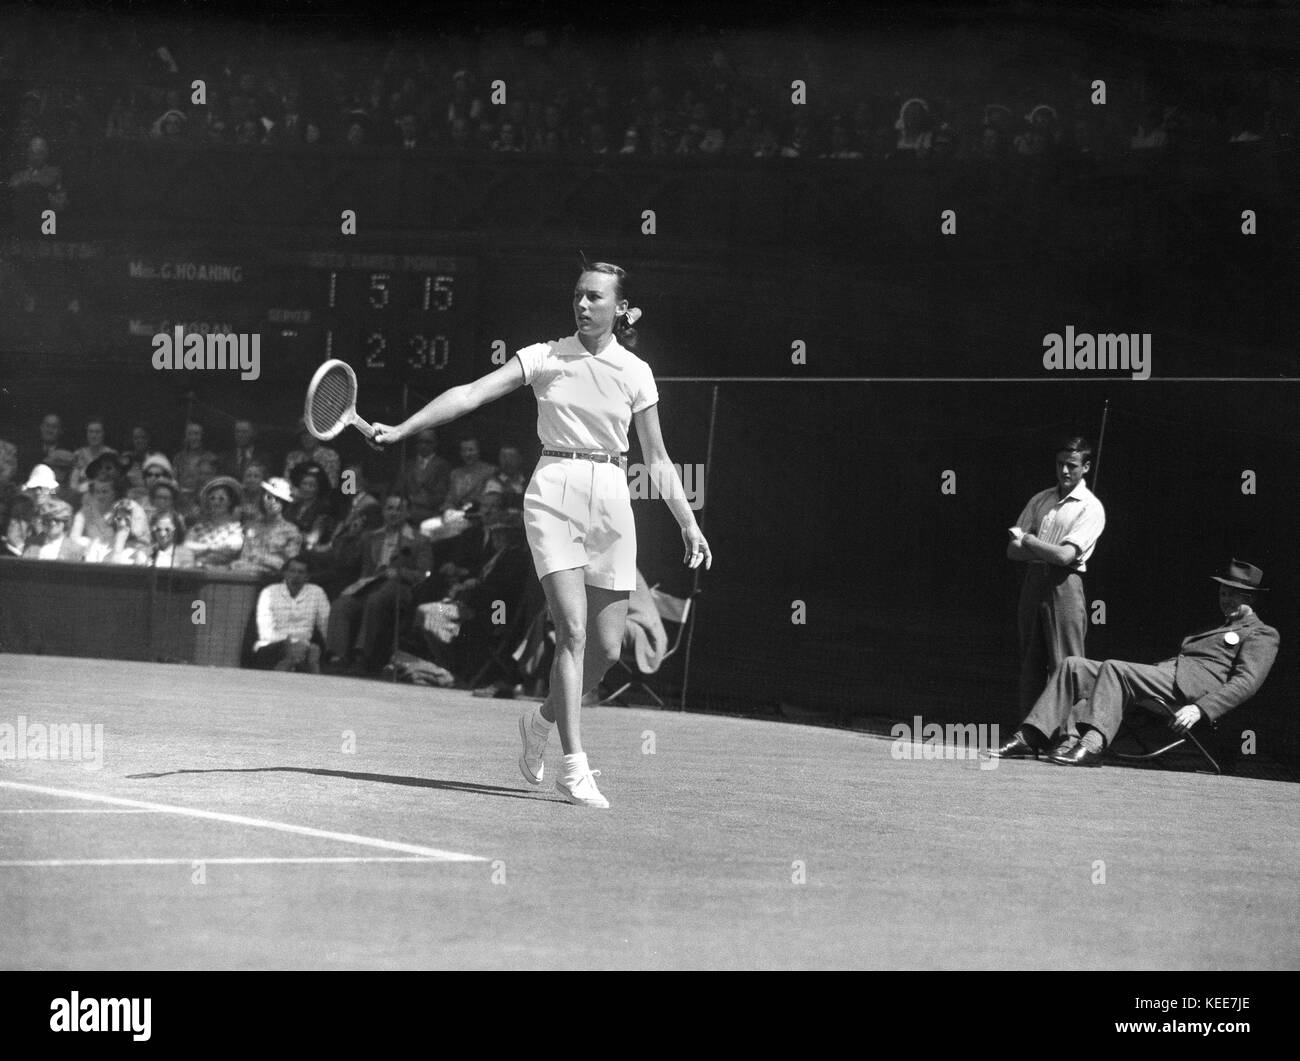 Wimbledon Tennis Championships 1949 "kleines Juwel Juwel Hoahing versus "Gorgeous" gussie Moran. 4 ft 9" tall Kleinod gewinnt Ihr Spiel 6-2, 5-7, 6-3 gegen Herrliche Gussie - wer berühmt für das Tragen der ersten frilly knickers und kurzes Kleid, entworfen von Teddy Tinling, in Ihrer vorherigen Match war. Foto von Tony Henshaw *** Local Caption *** Von der 100-Original Negativ. Stockfoto